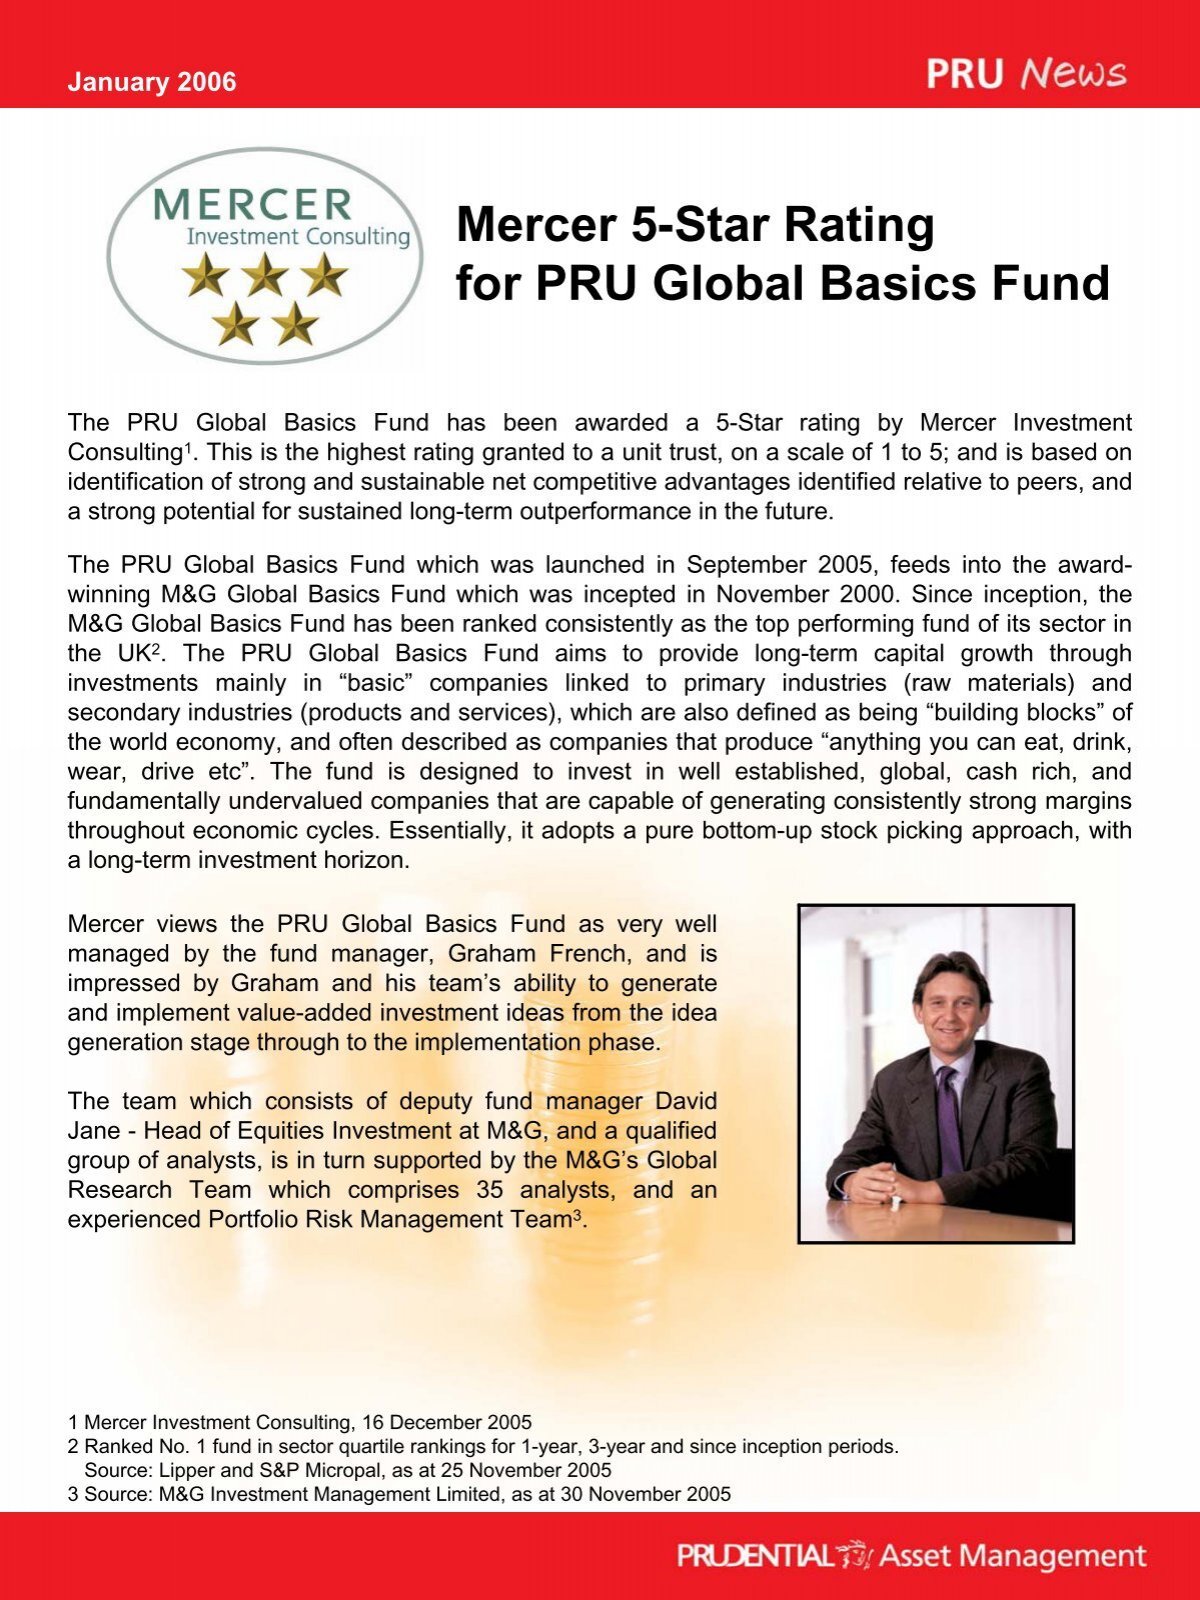 Mercer 5 Star Rating For Pru Global Basics Fund Eastspring